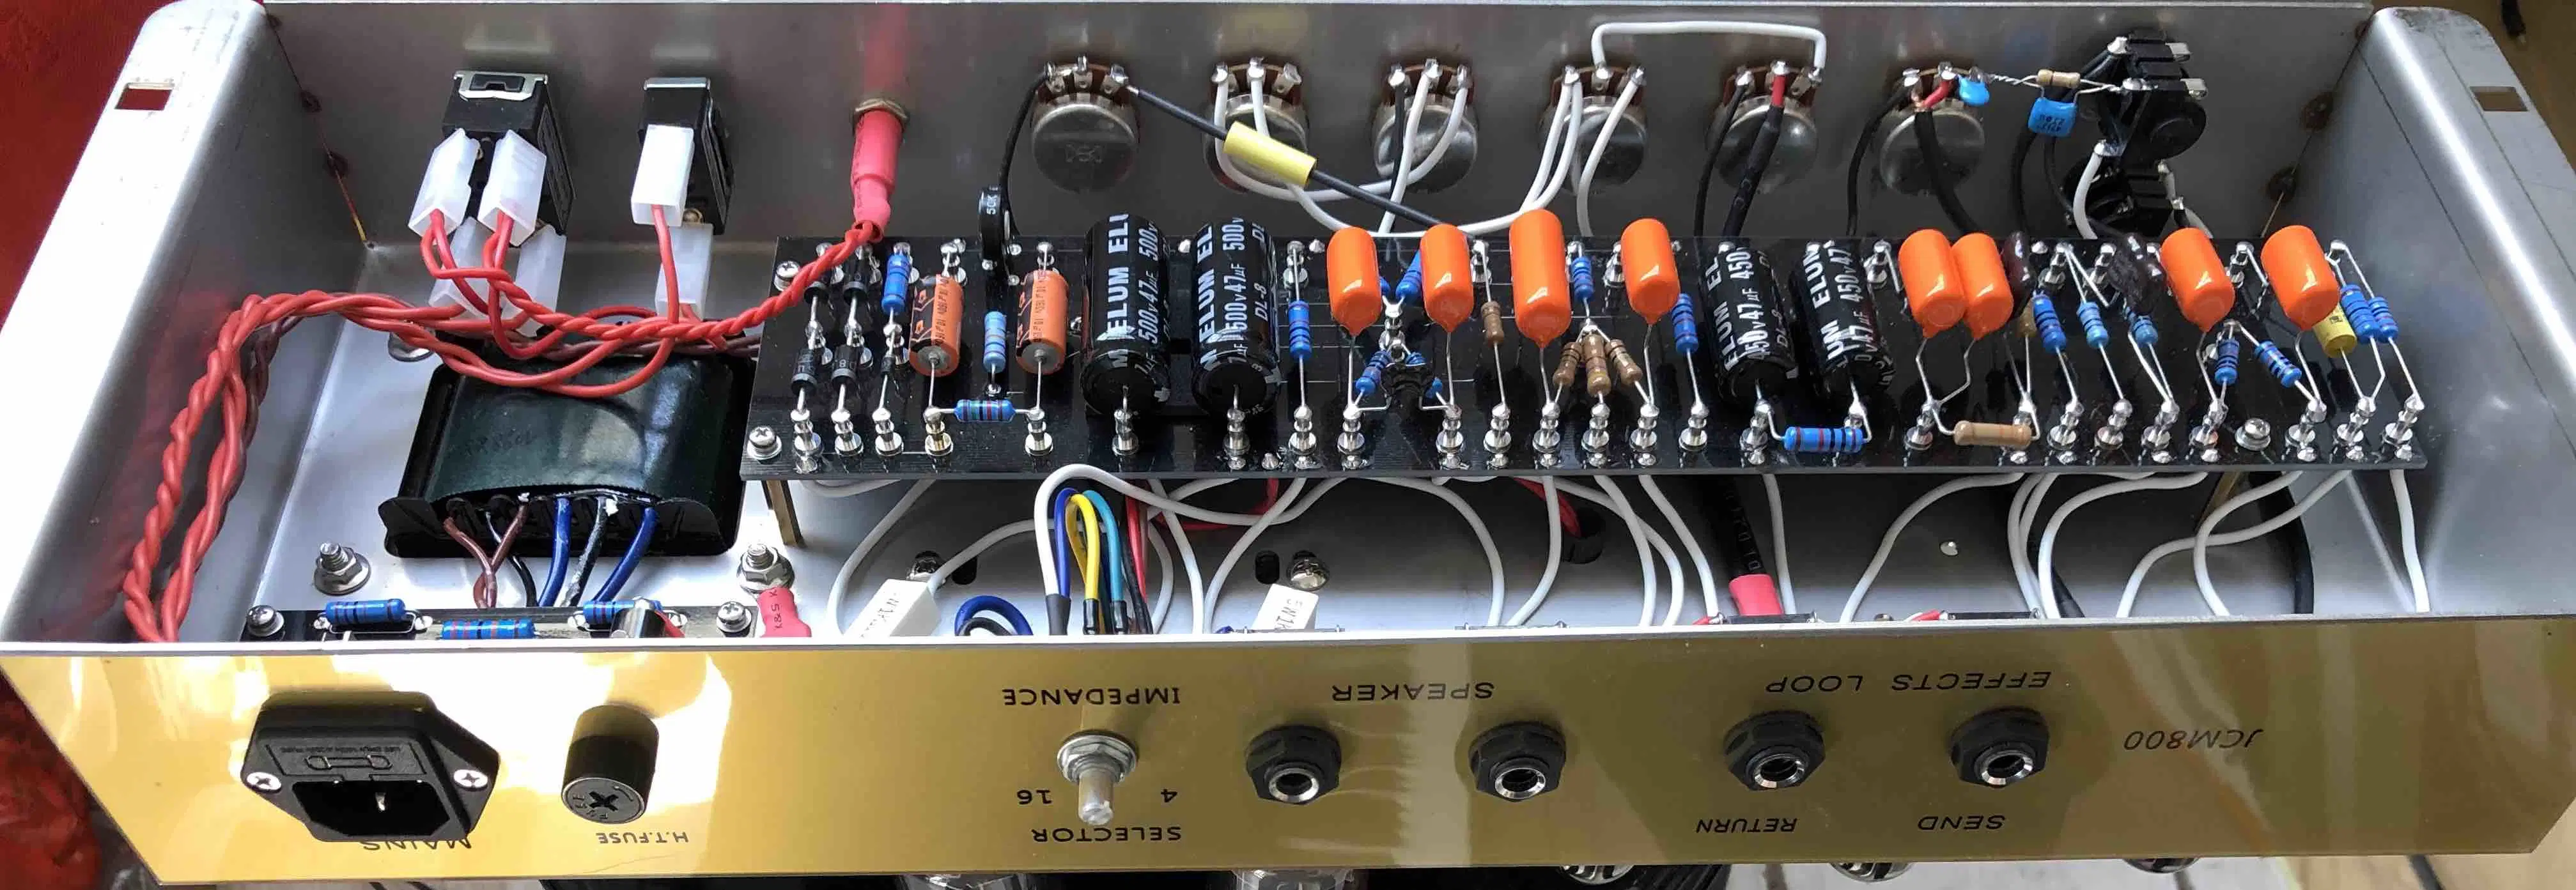 Cabeça do amplificador de guitarra elétrica Jcm Plexi de 50 W com efeito Master loop